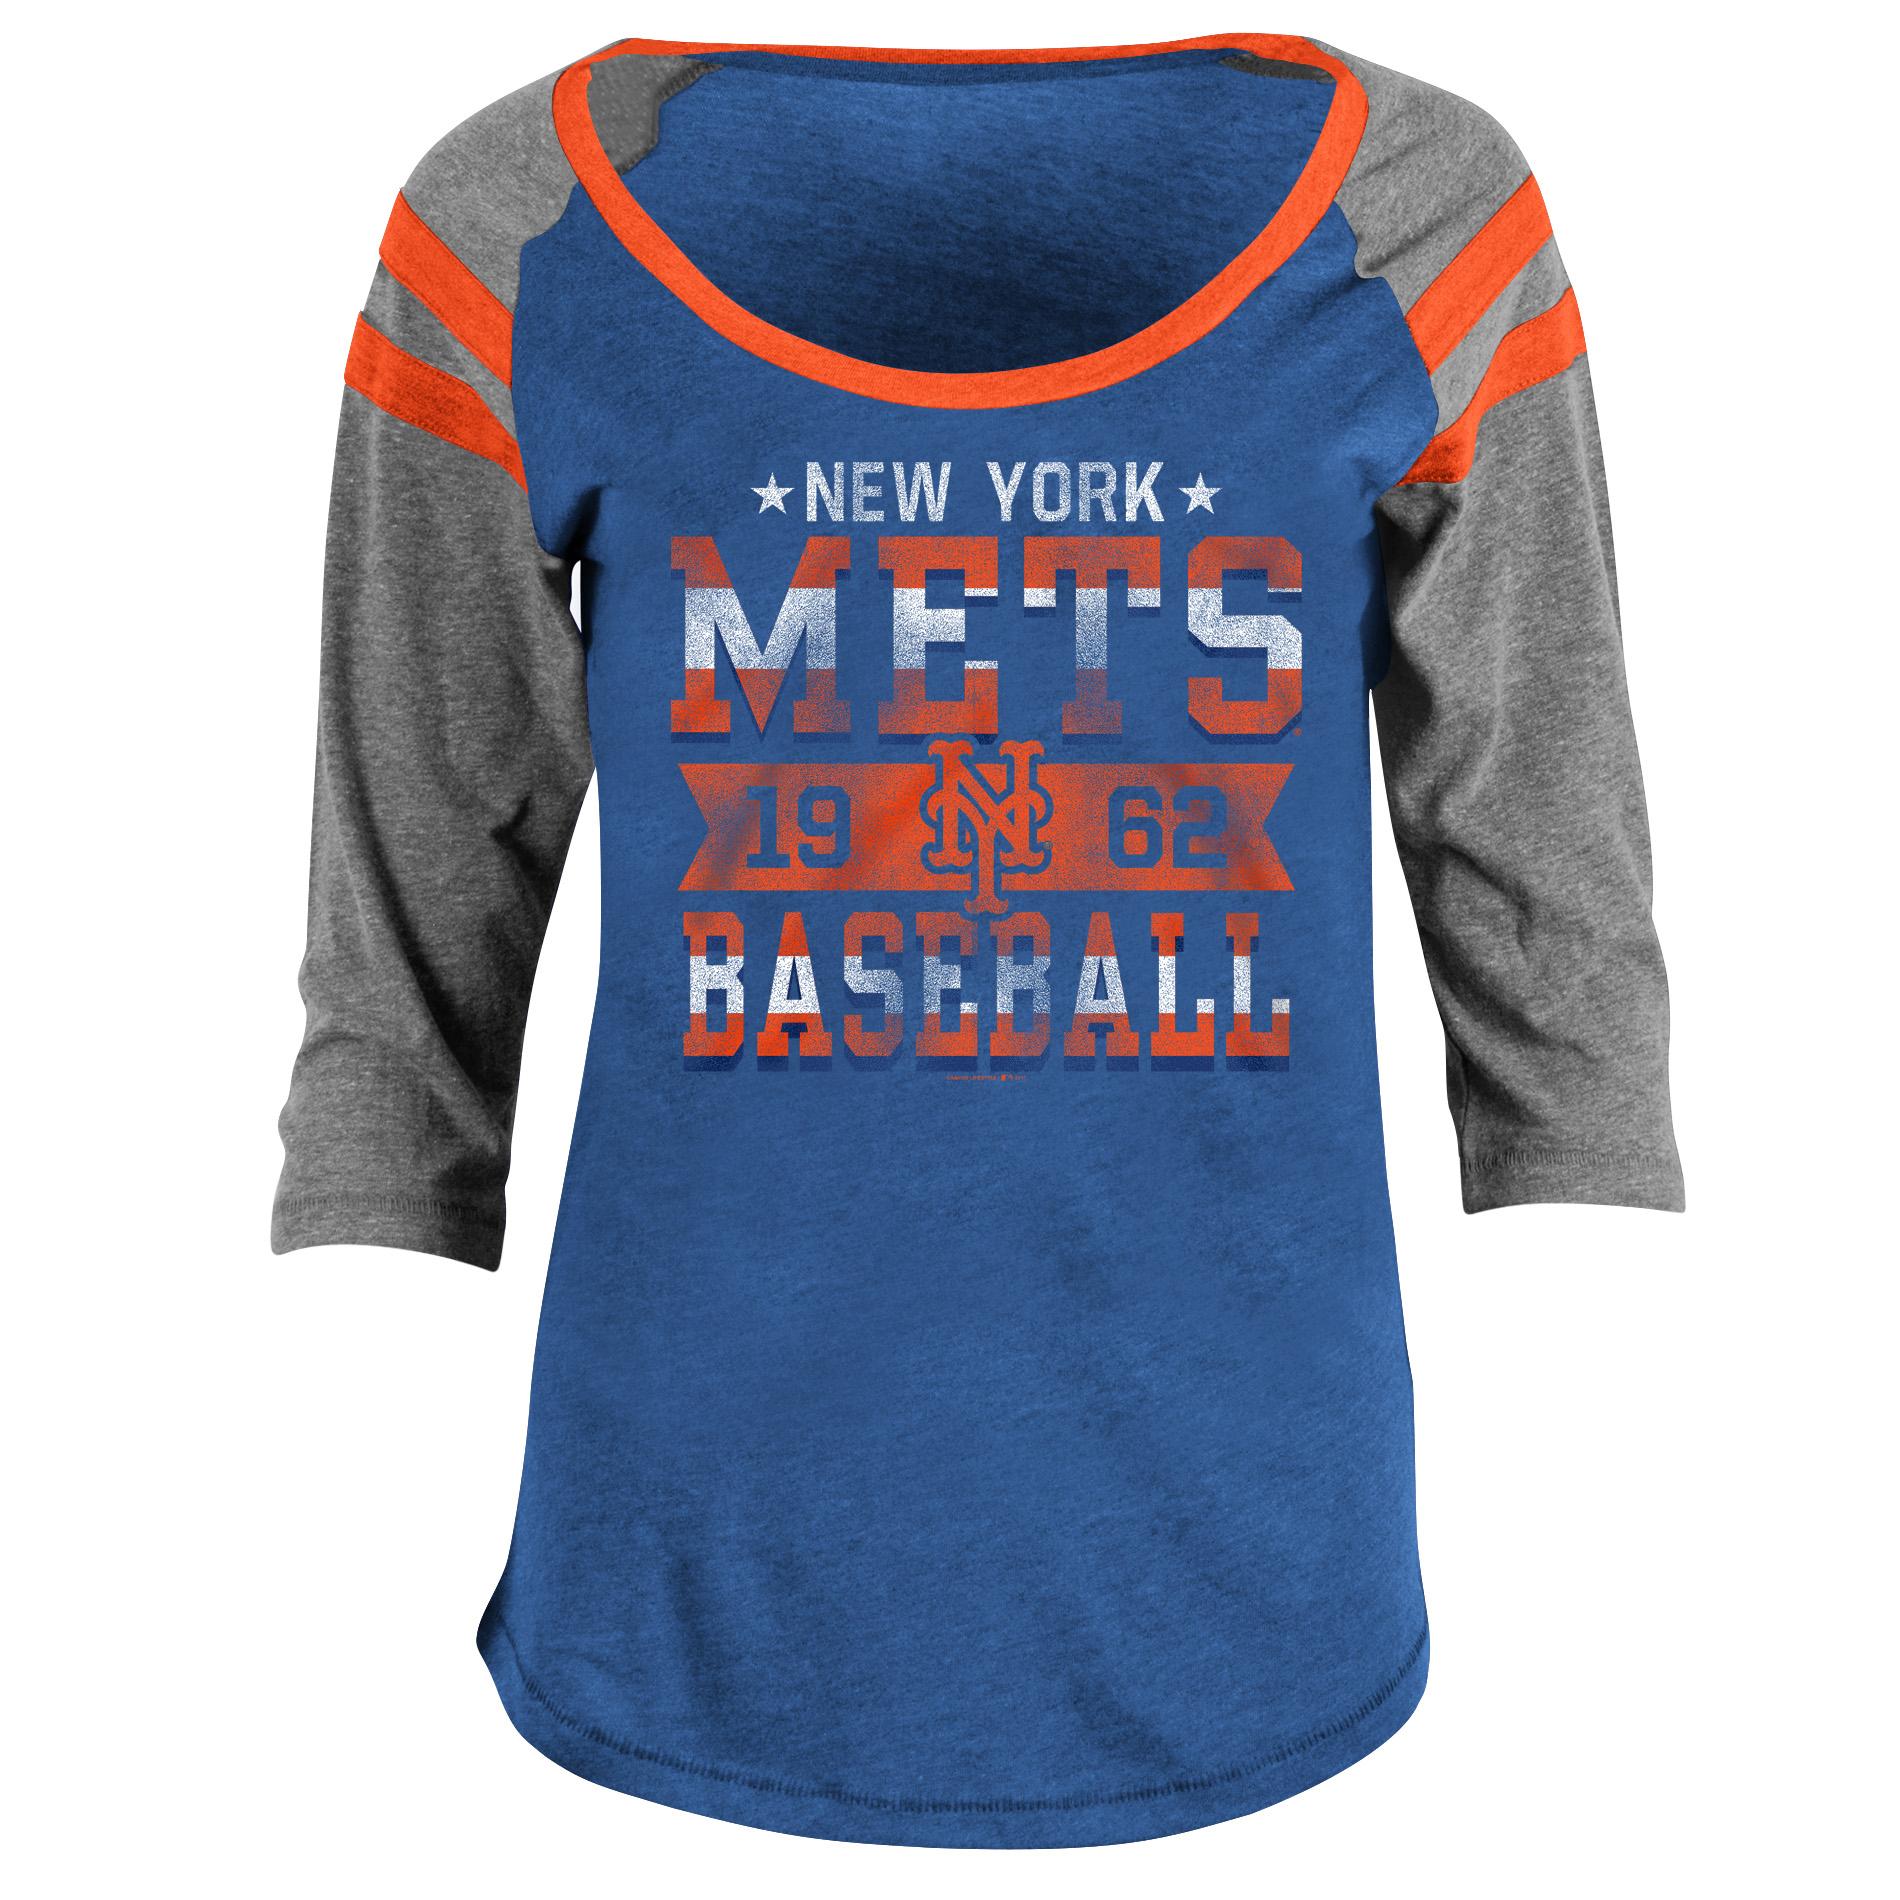 MLB Women's Graphic T-Shirt - New York Mets